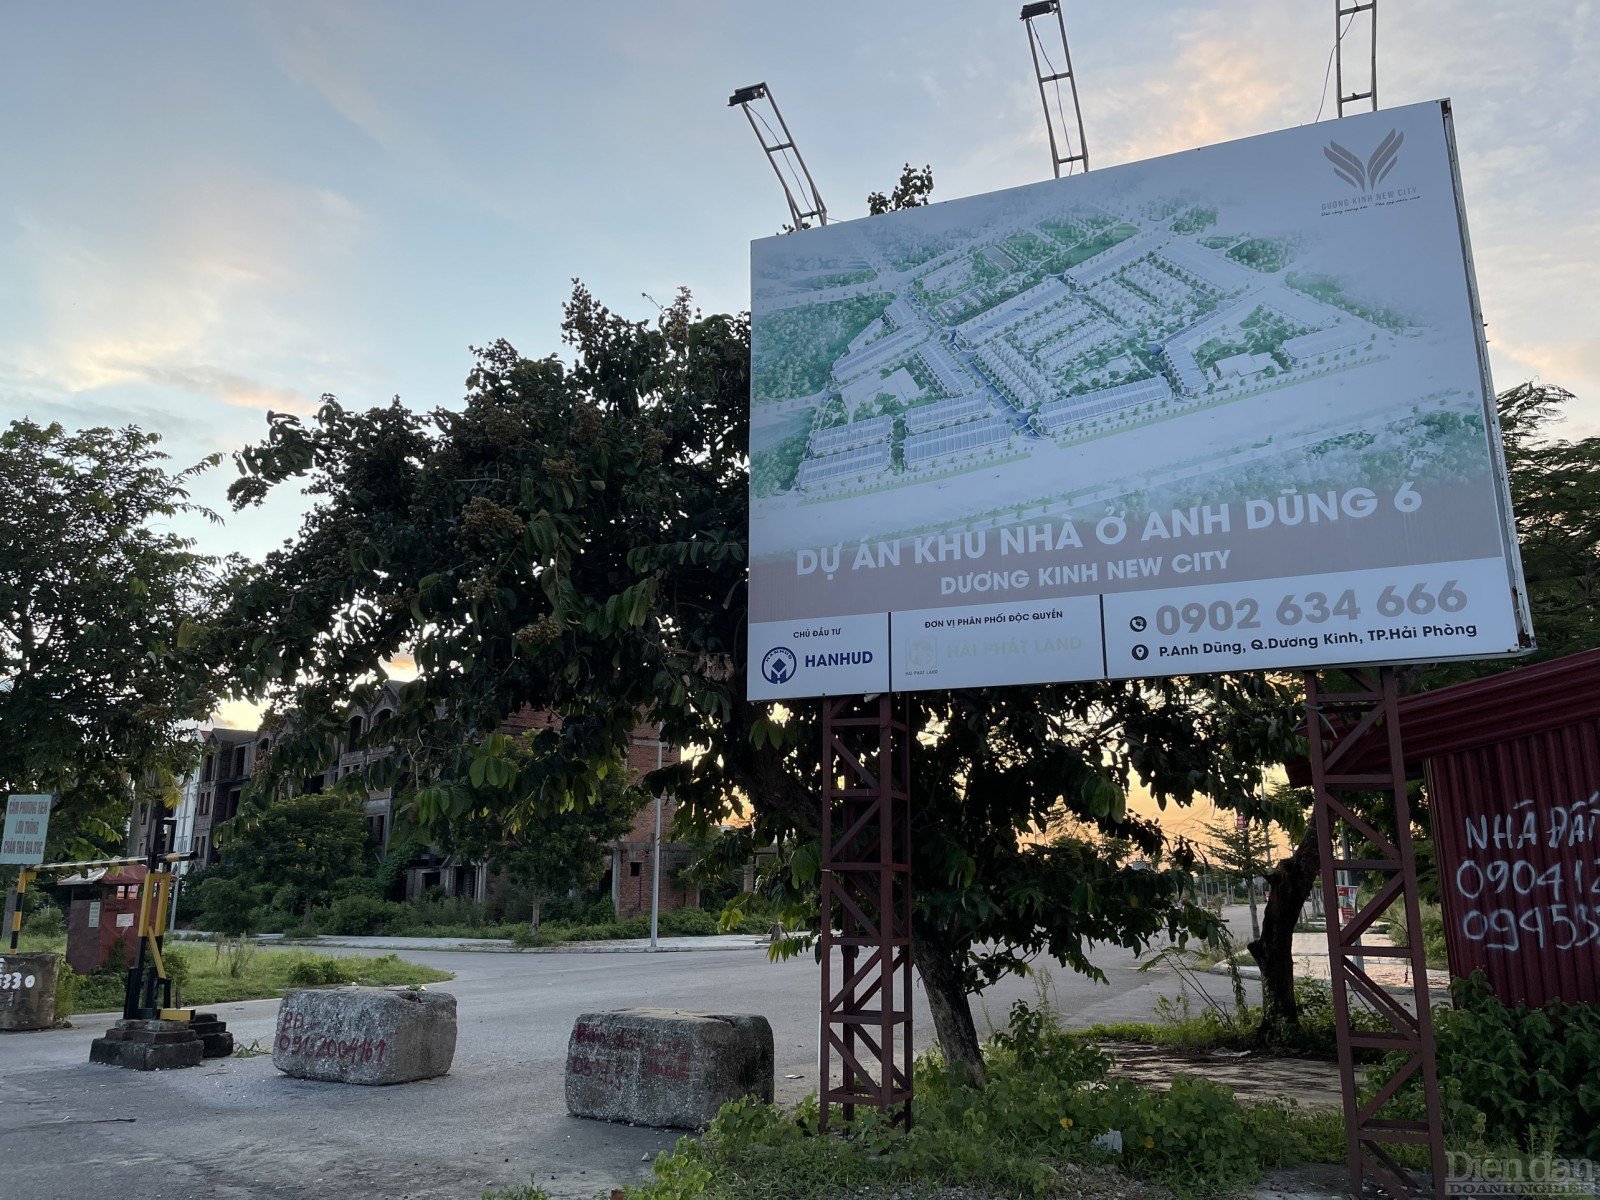 Dự án khu nhà ở Anh Dũng 6, phường Anh Dũng, quận Dương Kinh, TP Hải Phòng được kỳ vọng là khu đô thị hiện đại, với đầy đủ tiện nghi